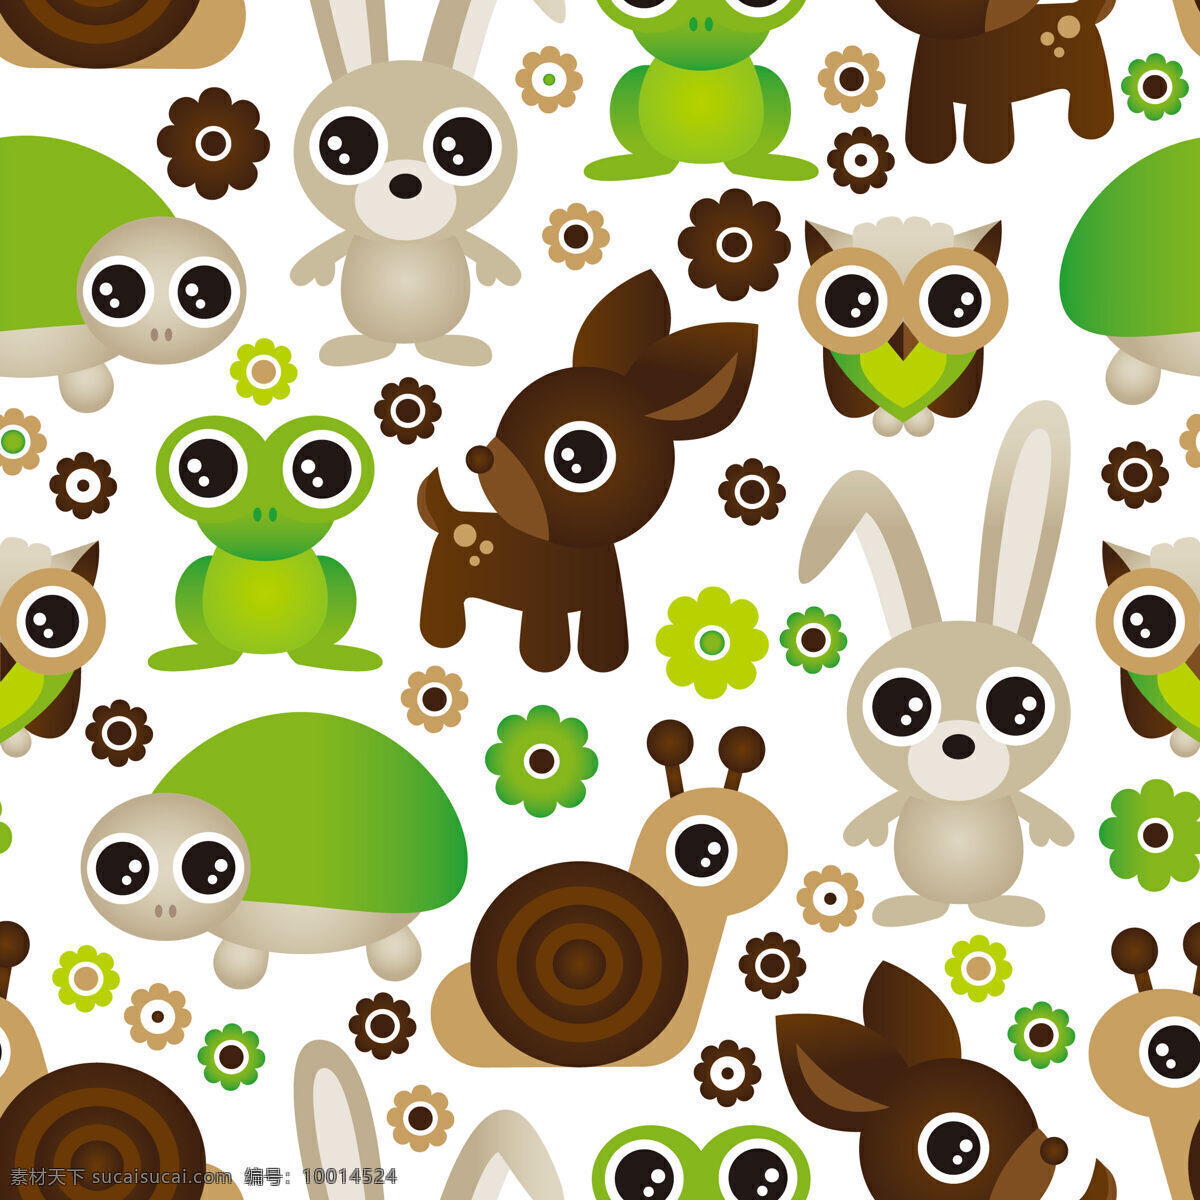 清新 水汪汪 动物 壁纸 图案 装饰设计 大眼睛元素 壁纸图案 灰色兔子 绿色乌龟 青蛙